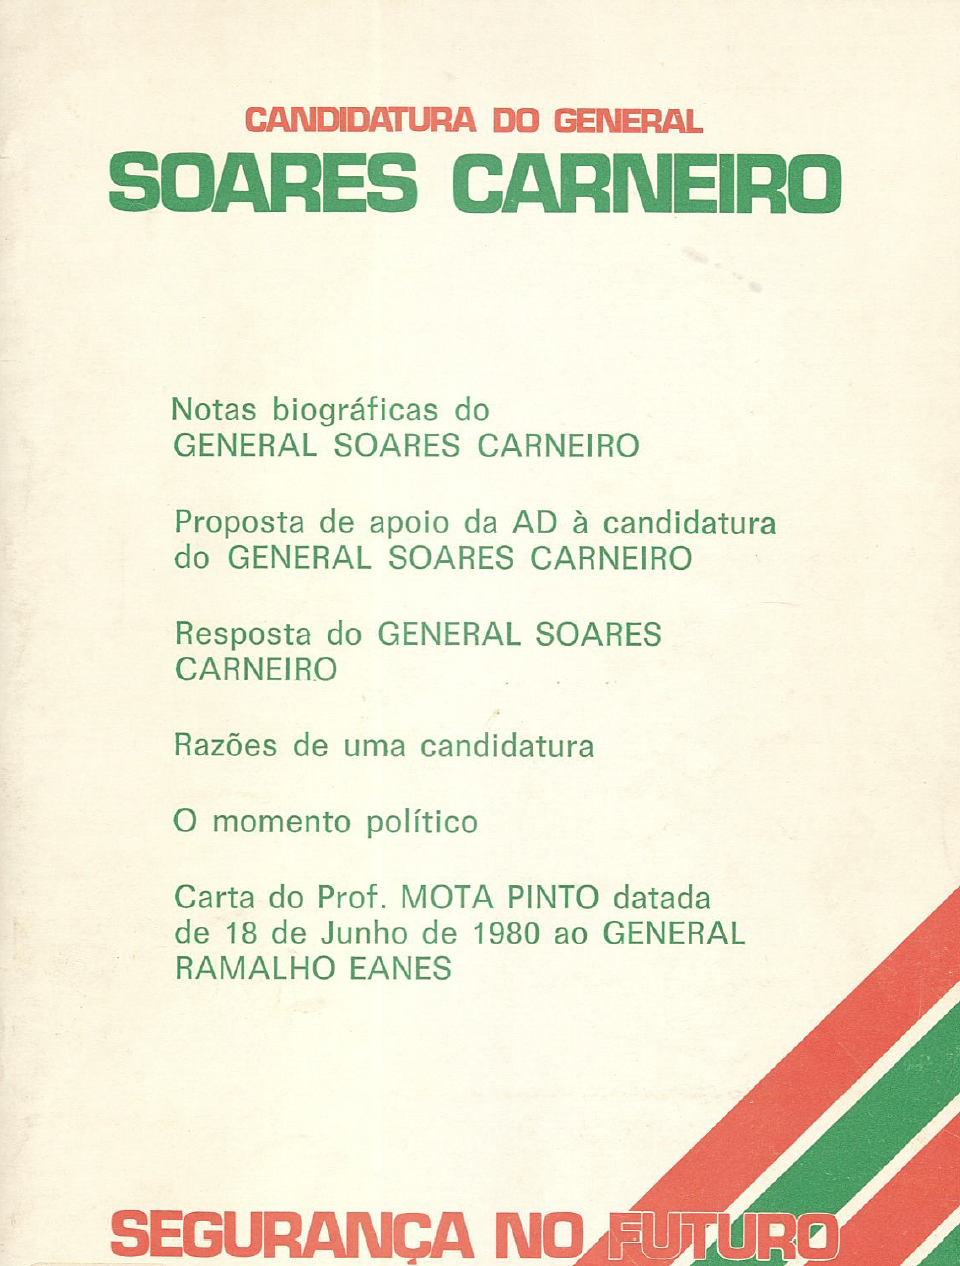 Candidatura do General Soares Carneiro